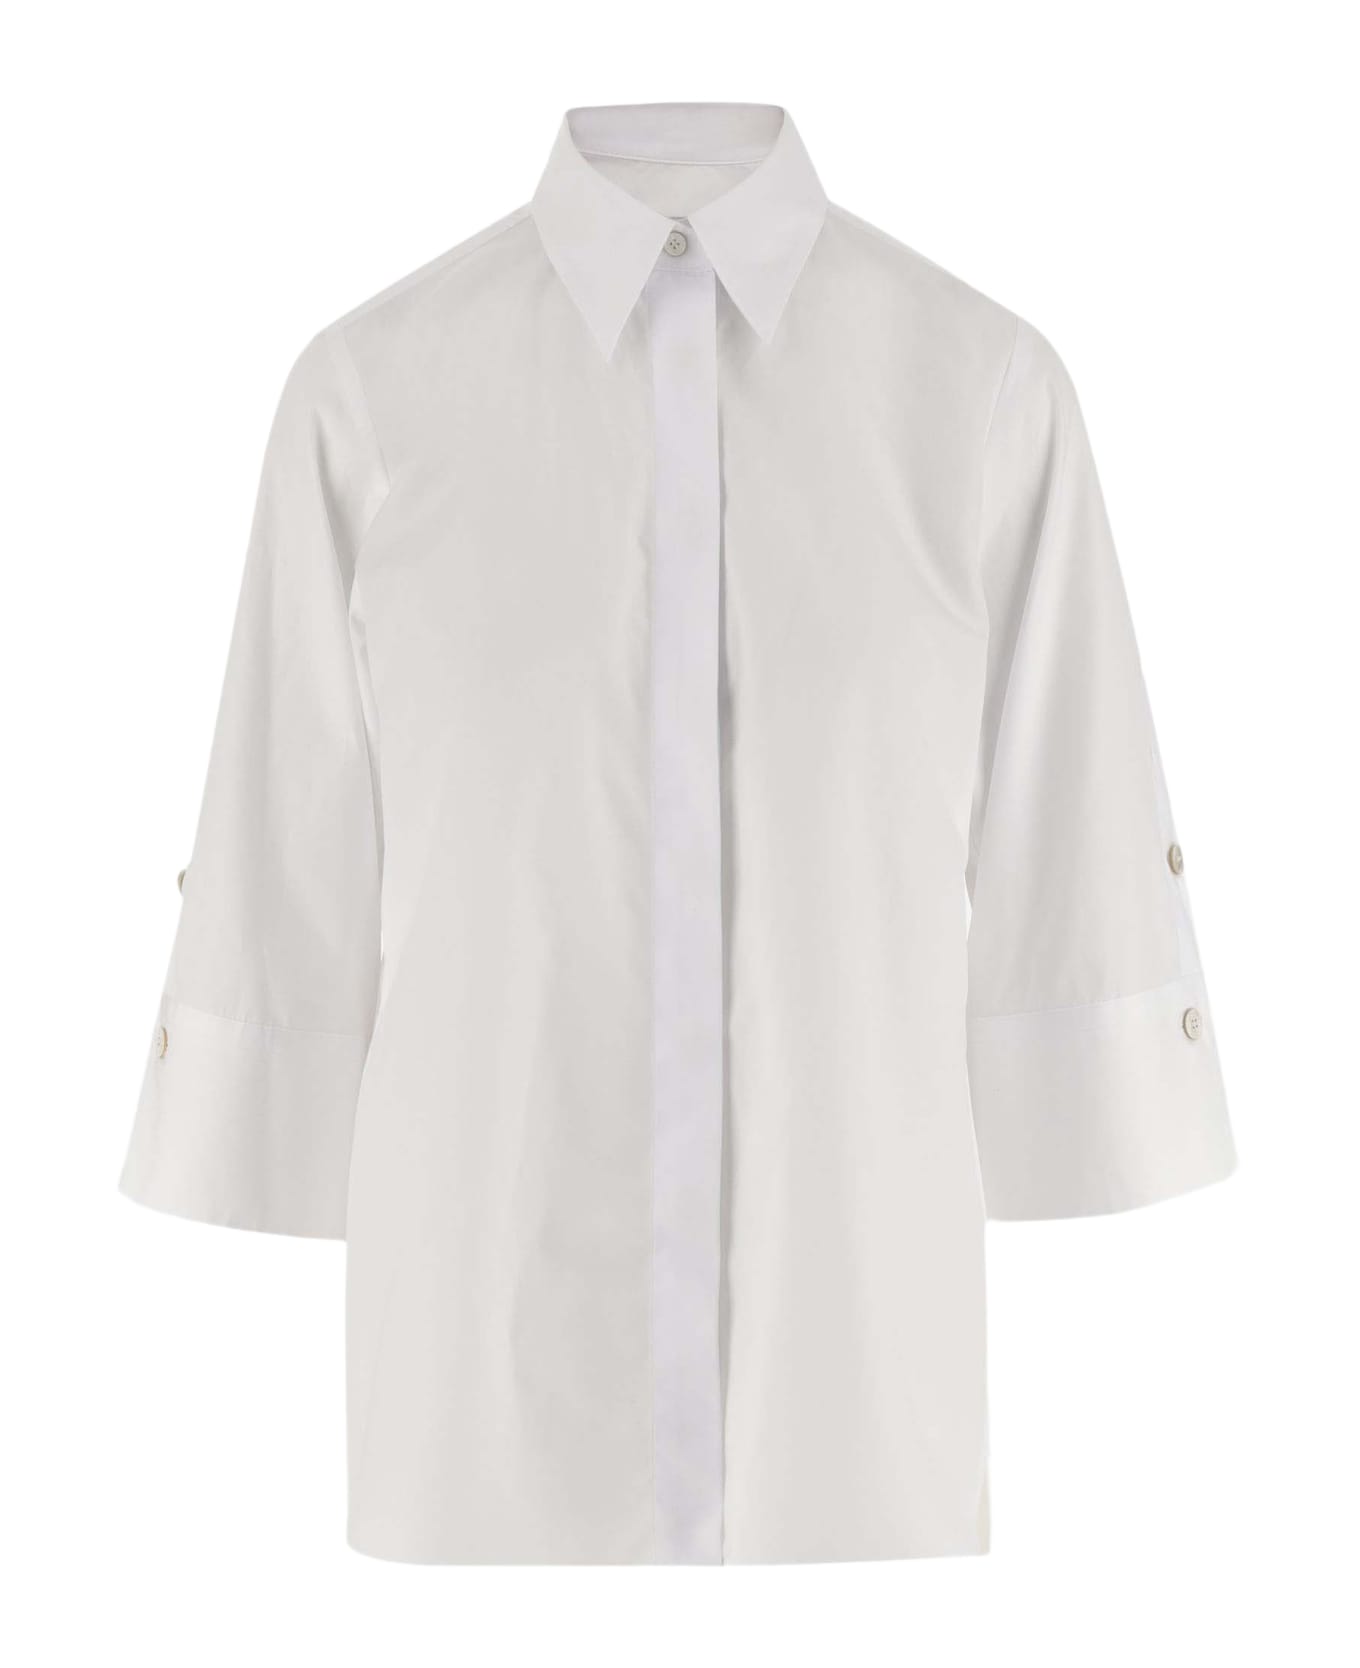 Alberto Biani Cotton Shirt - White シャツ